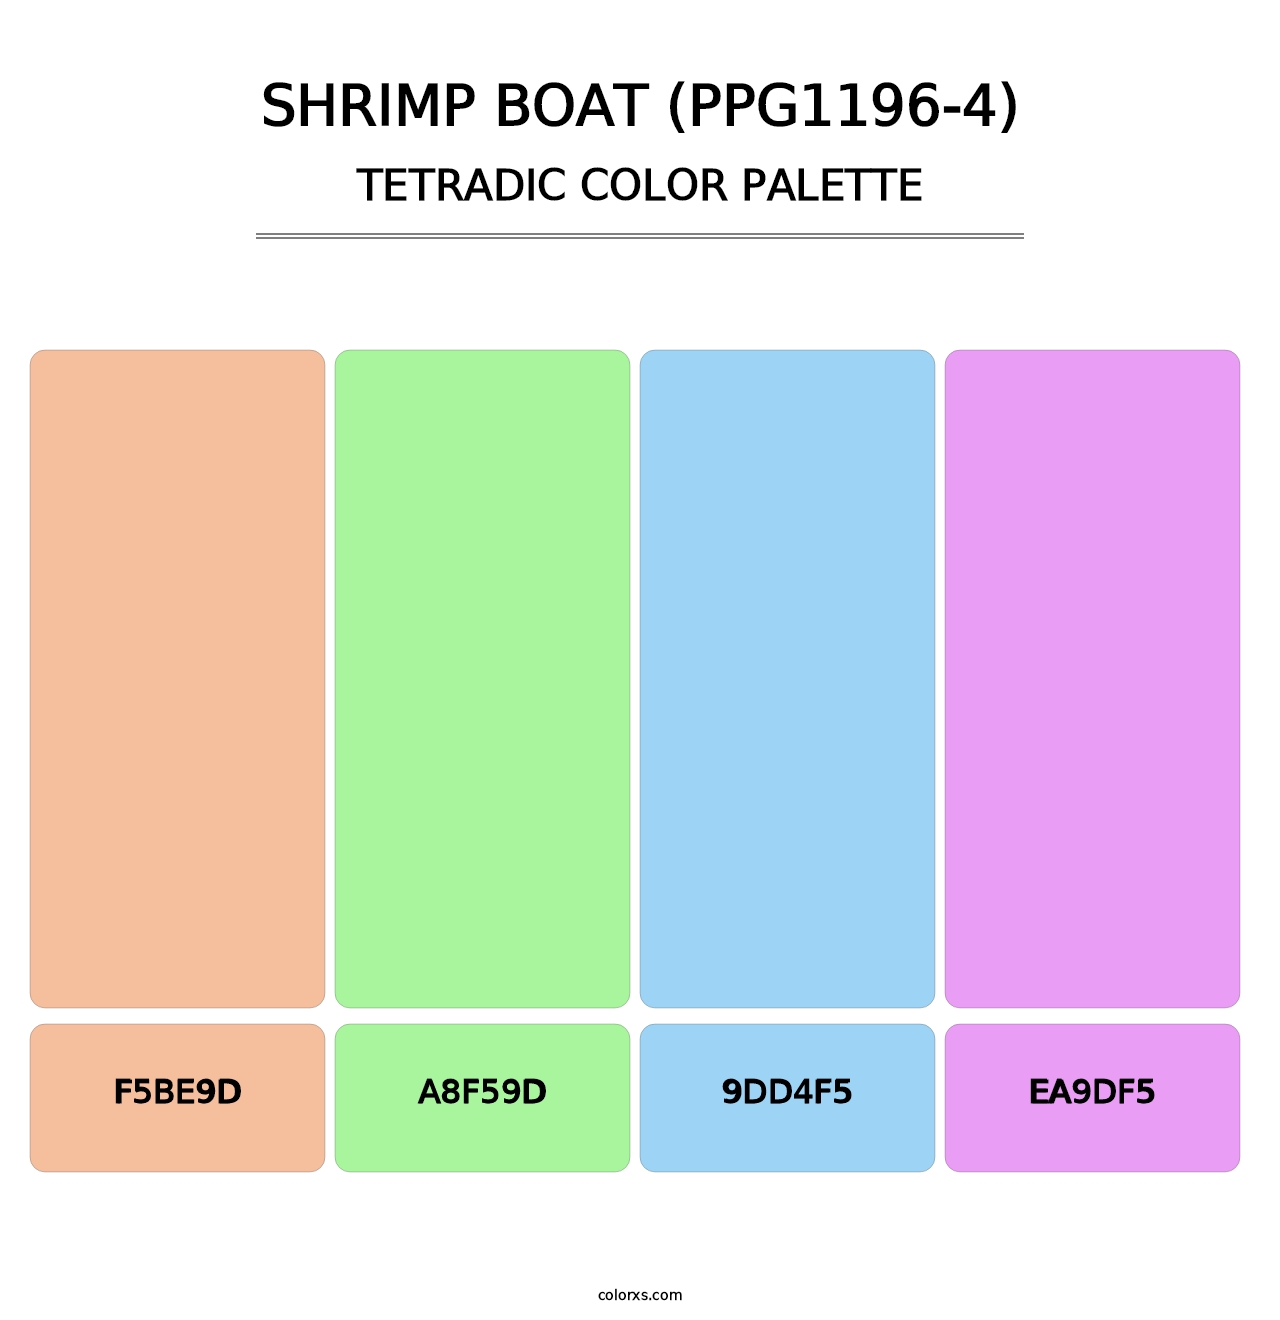 Shrimp Boat (PPG1196-4) - Tetradic Color Palette